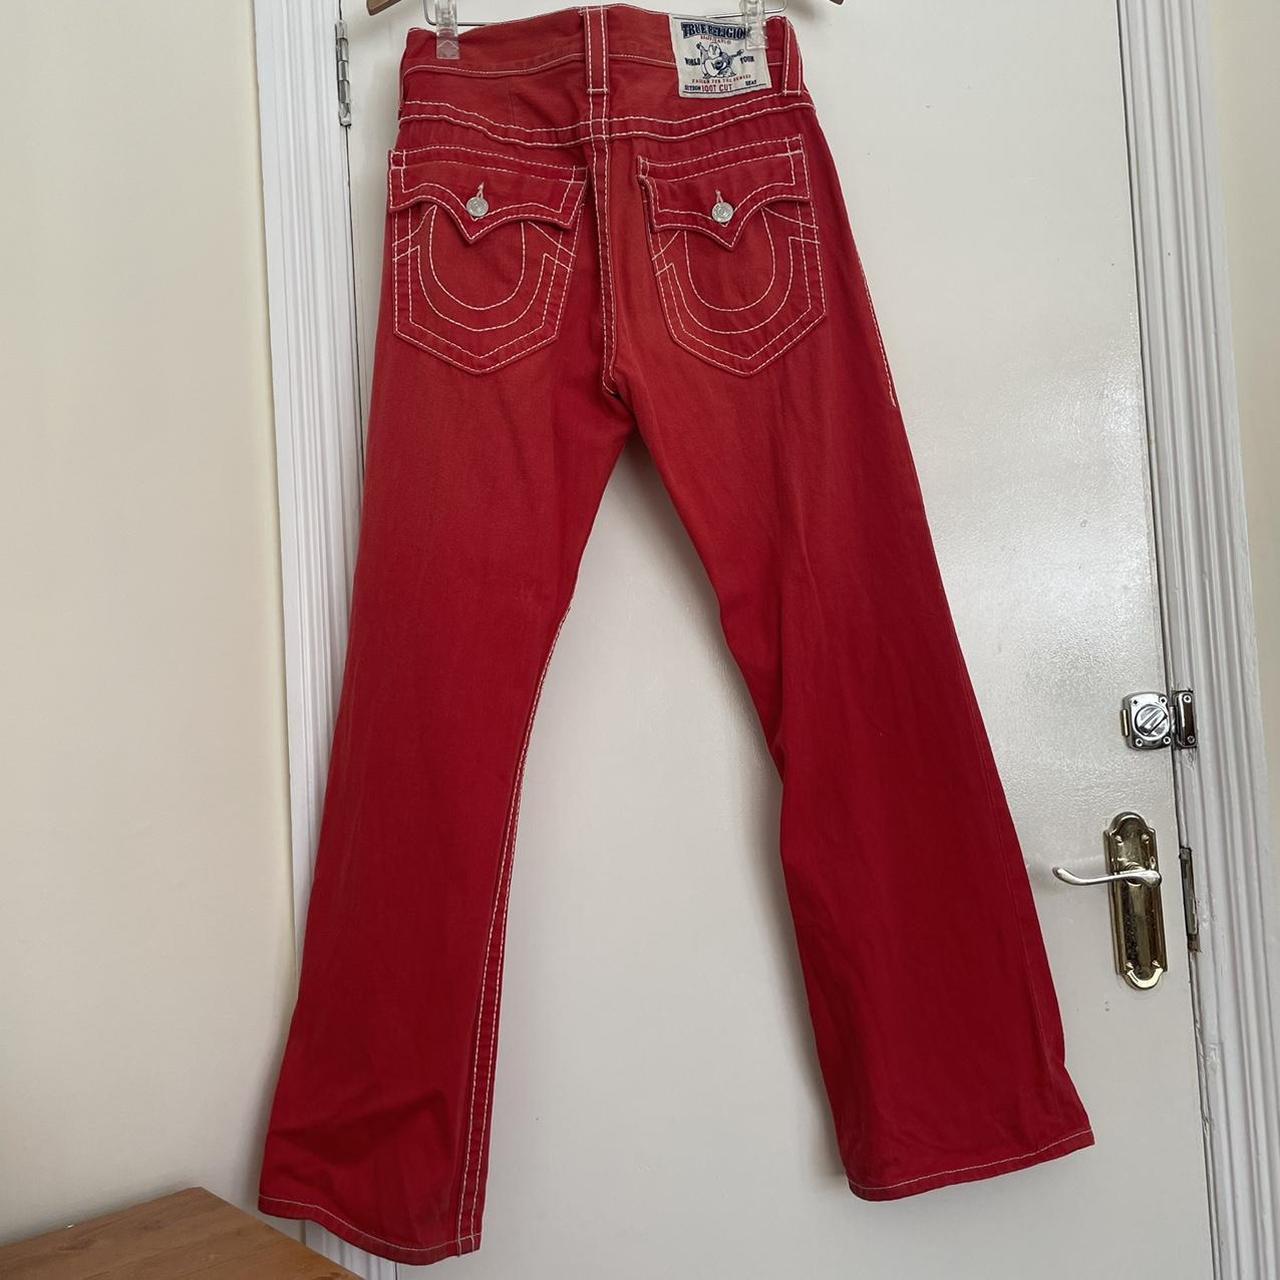 Bootcut True religion red jeans. Size 32W 32L open... - Depop